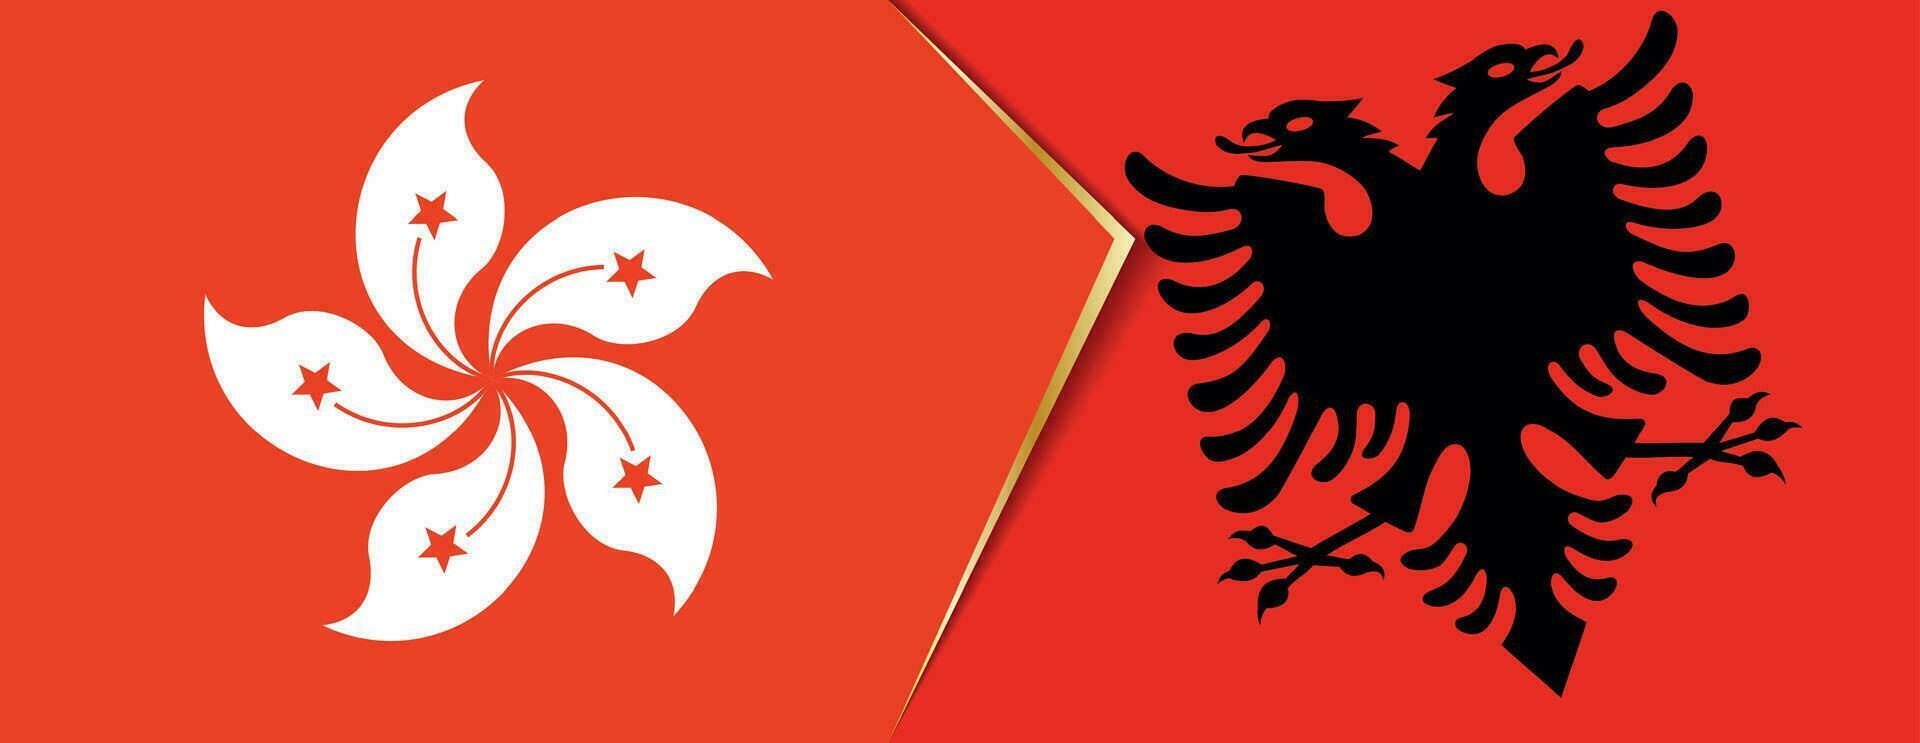 hong kong y Albania banderas, dos vector banderas